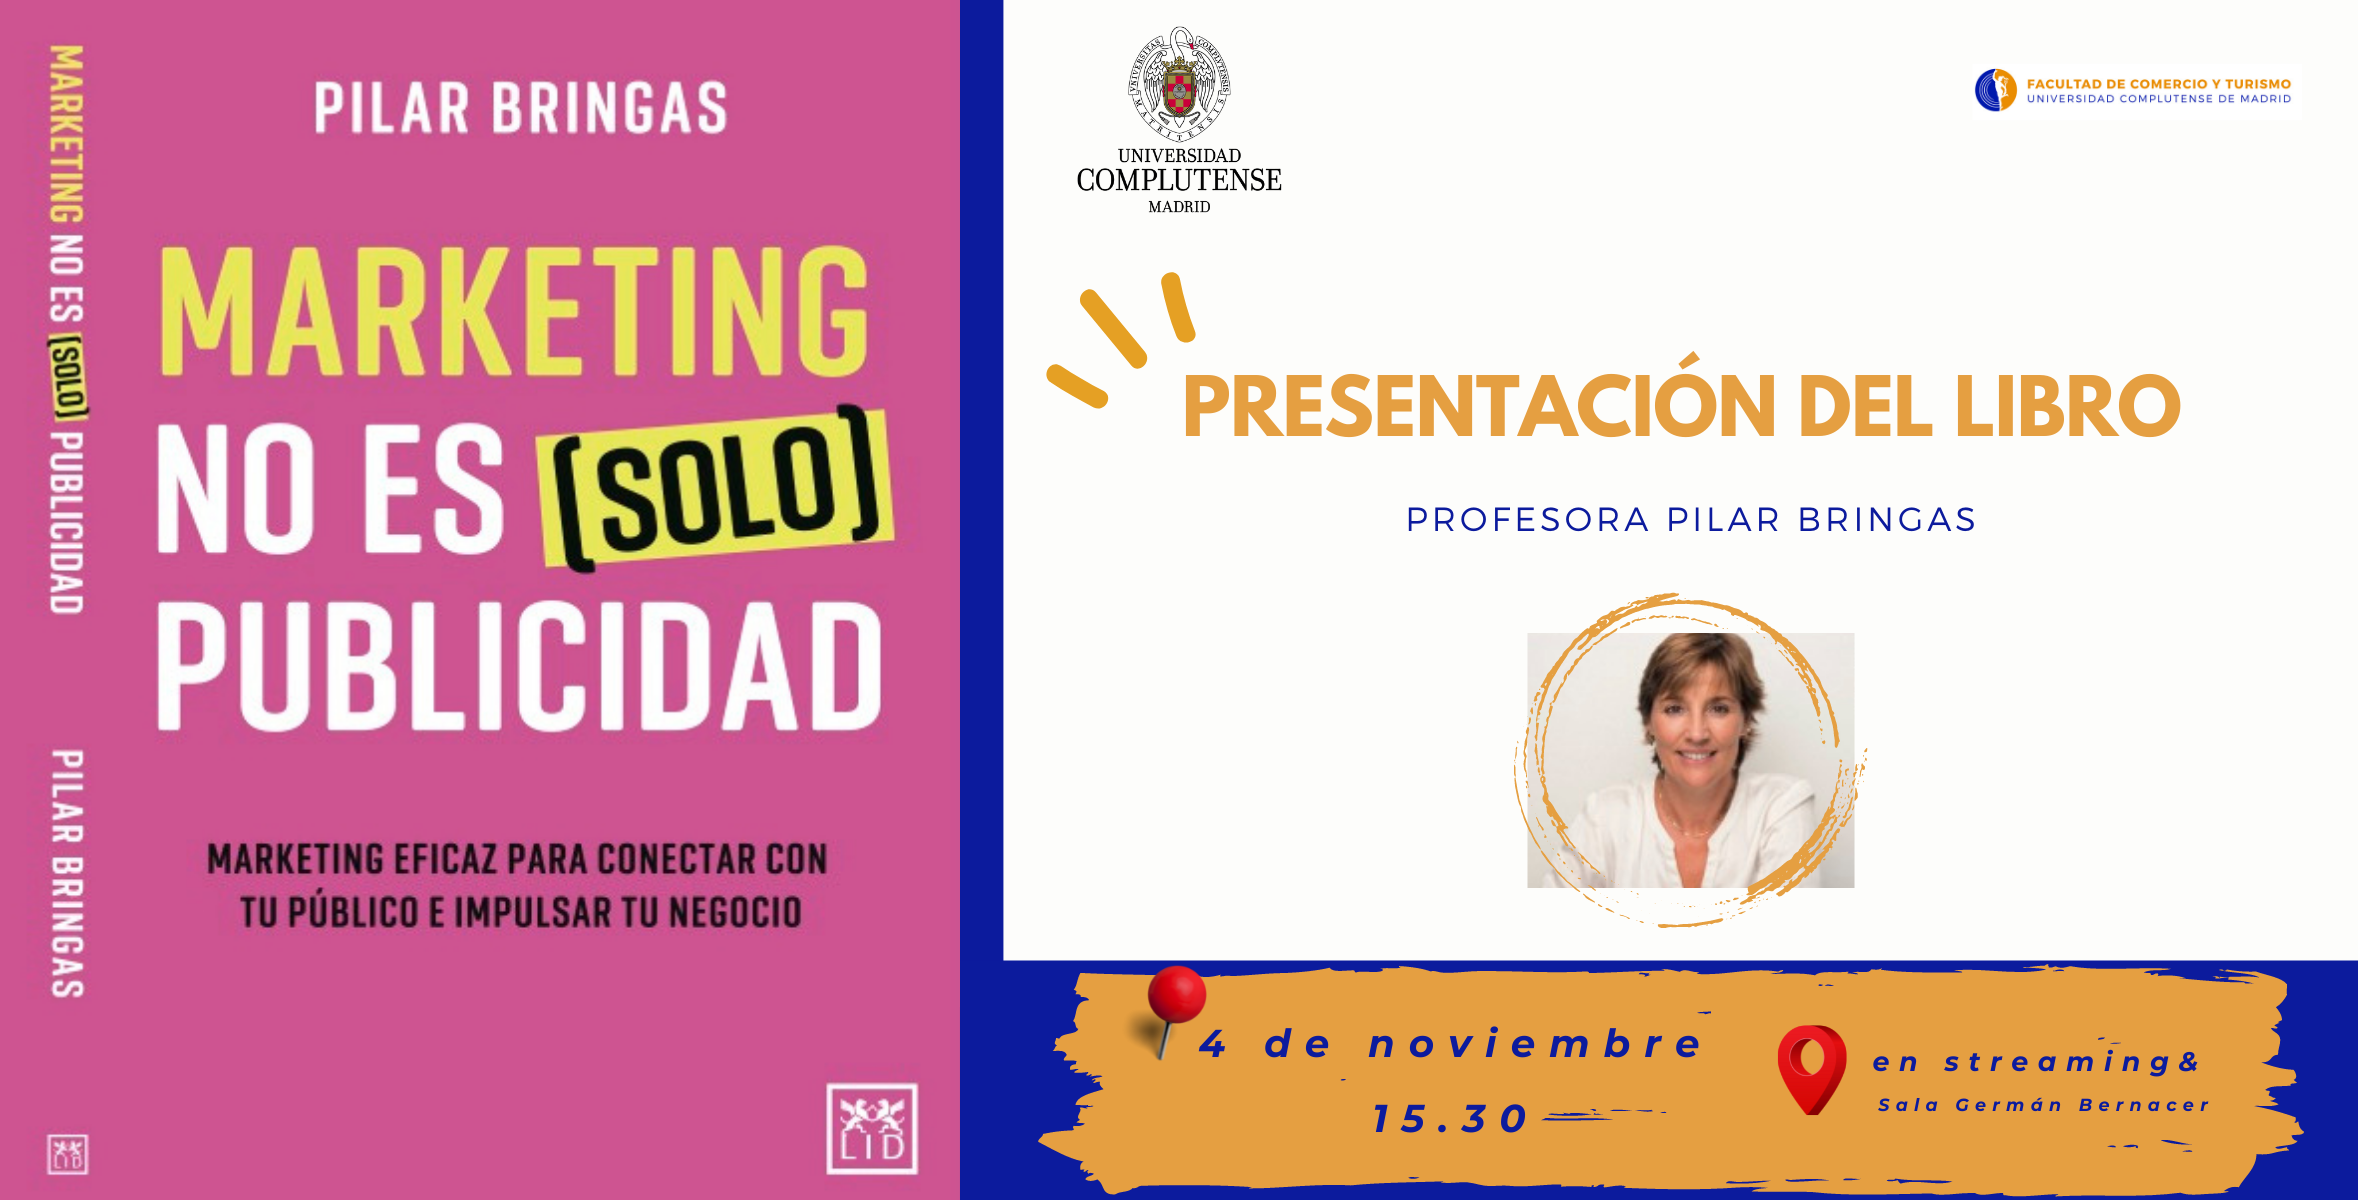 Presentación del libro de la Profesora Pilar Bringas - 1